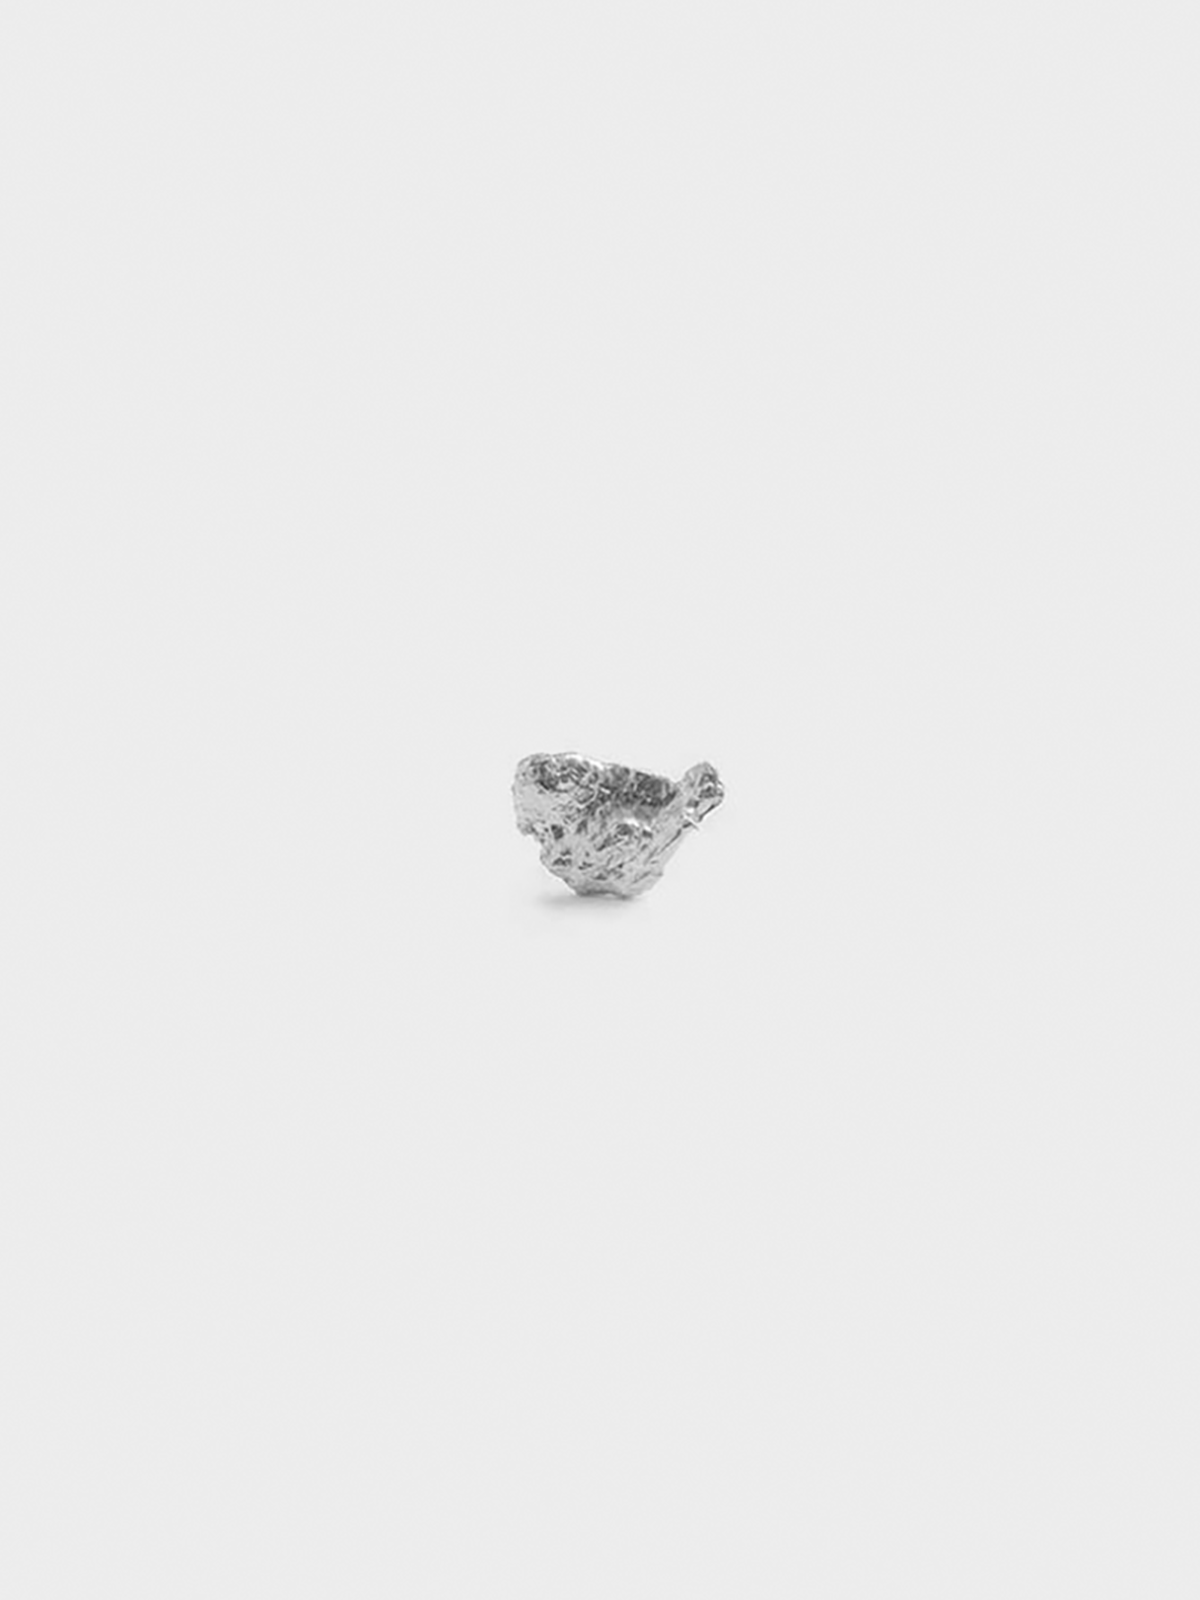 Lea Hoyer - Nebula Earring in Silver